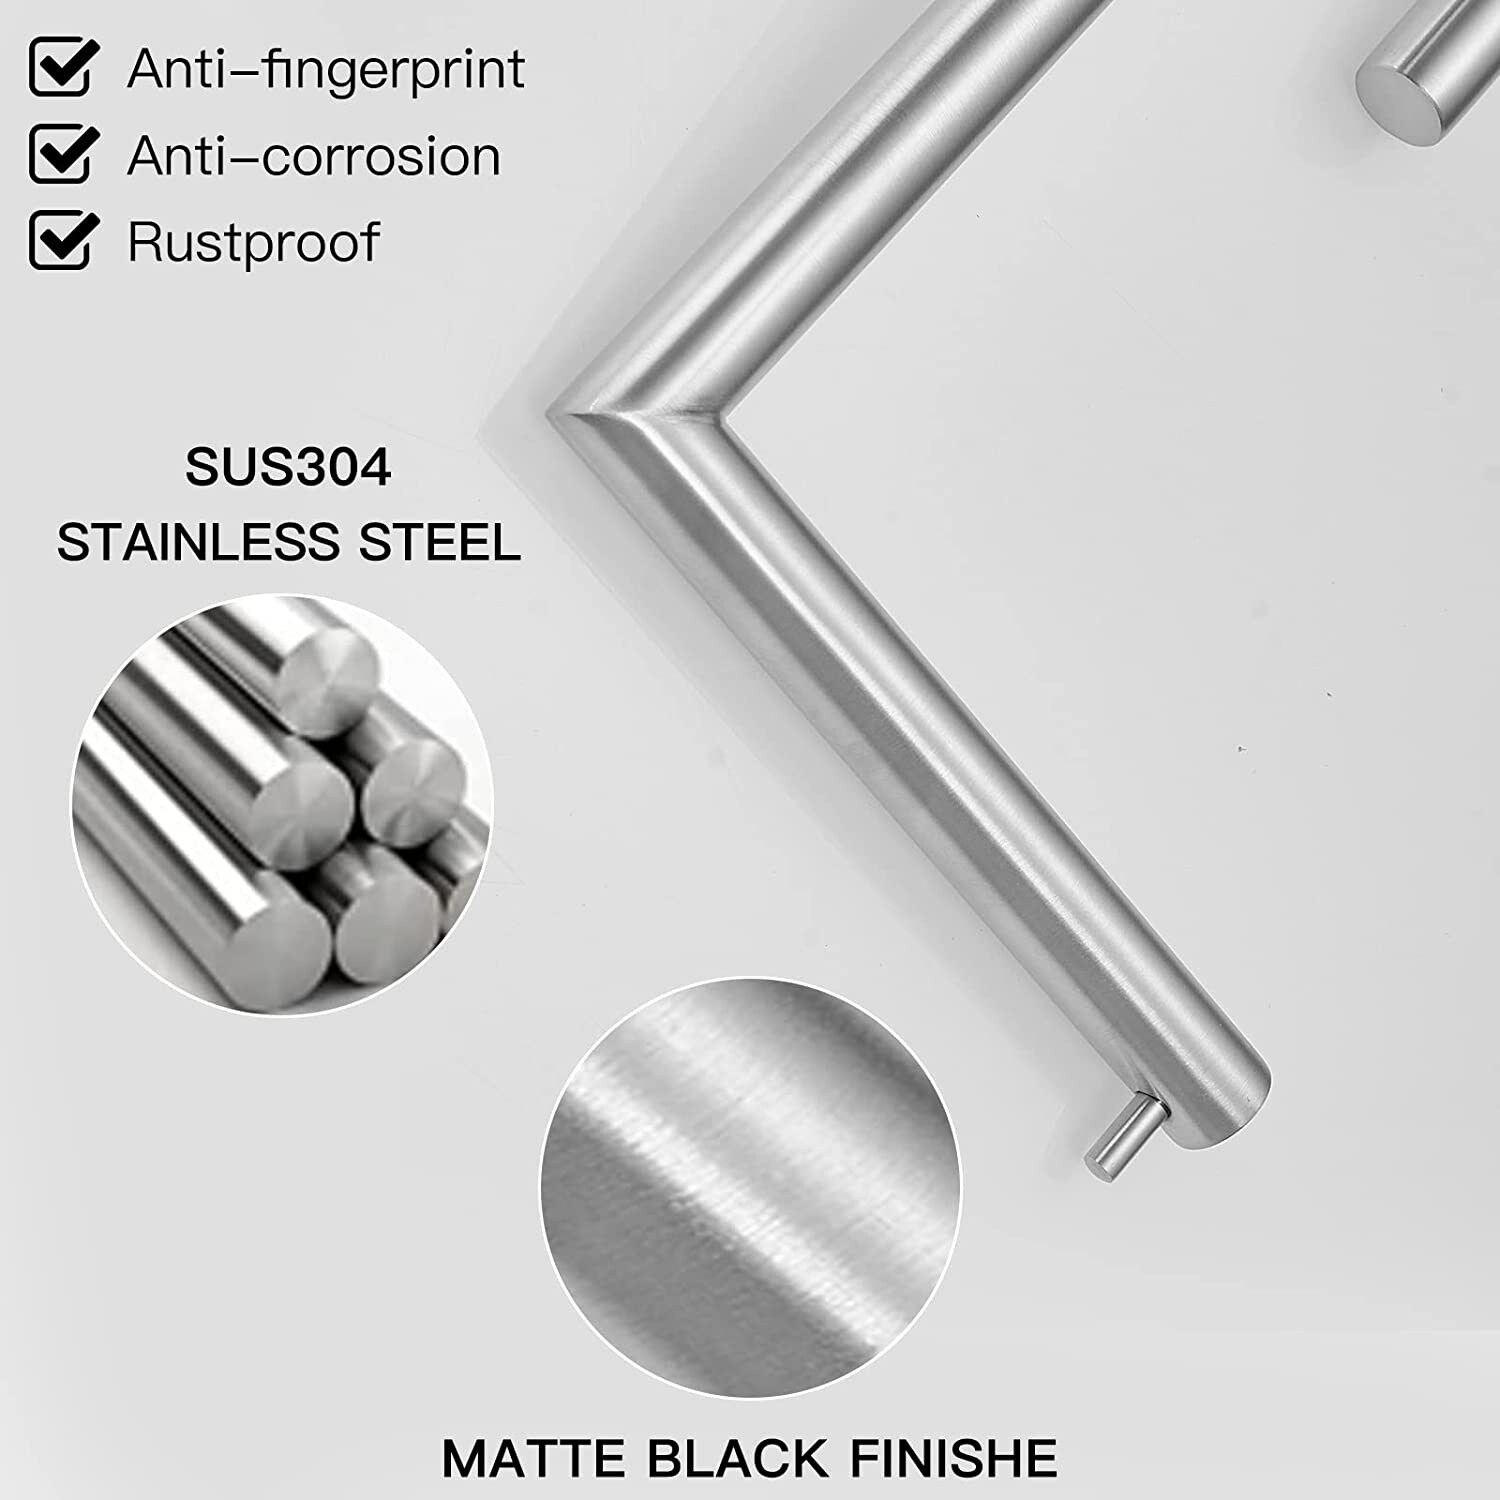 Freestanding Stainless Steel Toilet Paper Holder in Matte Black